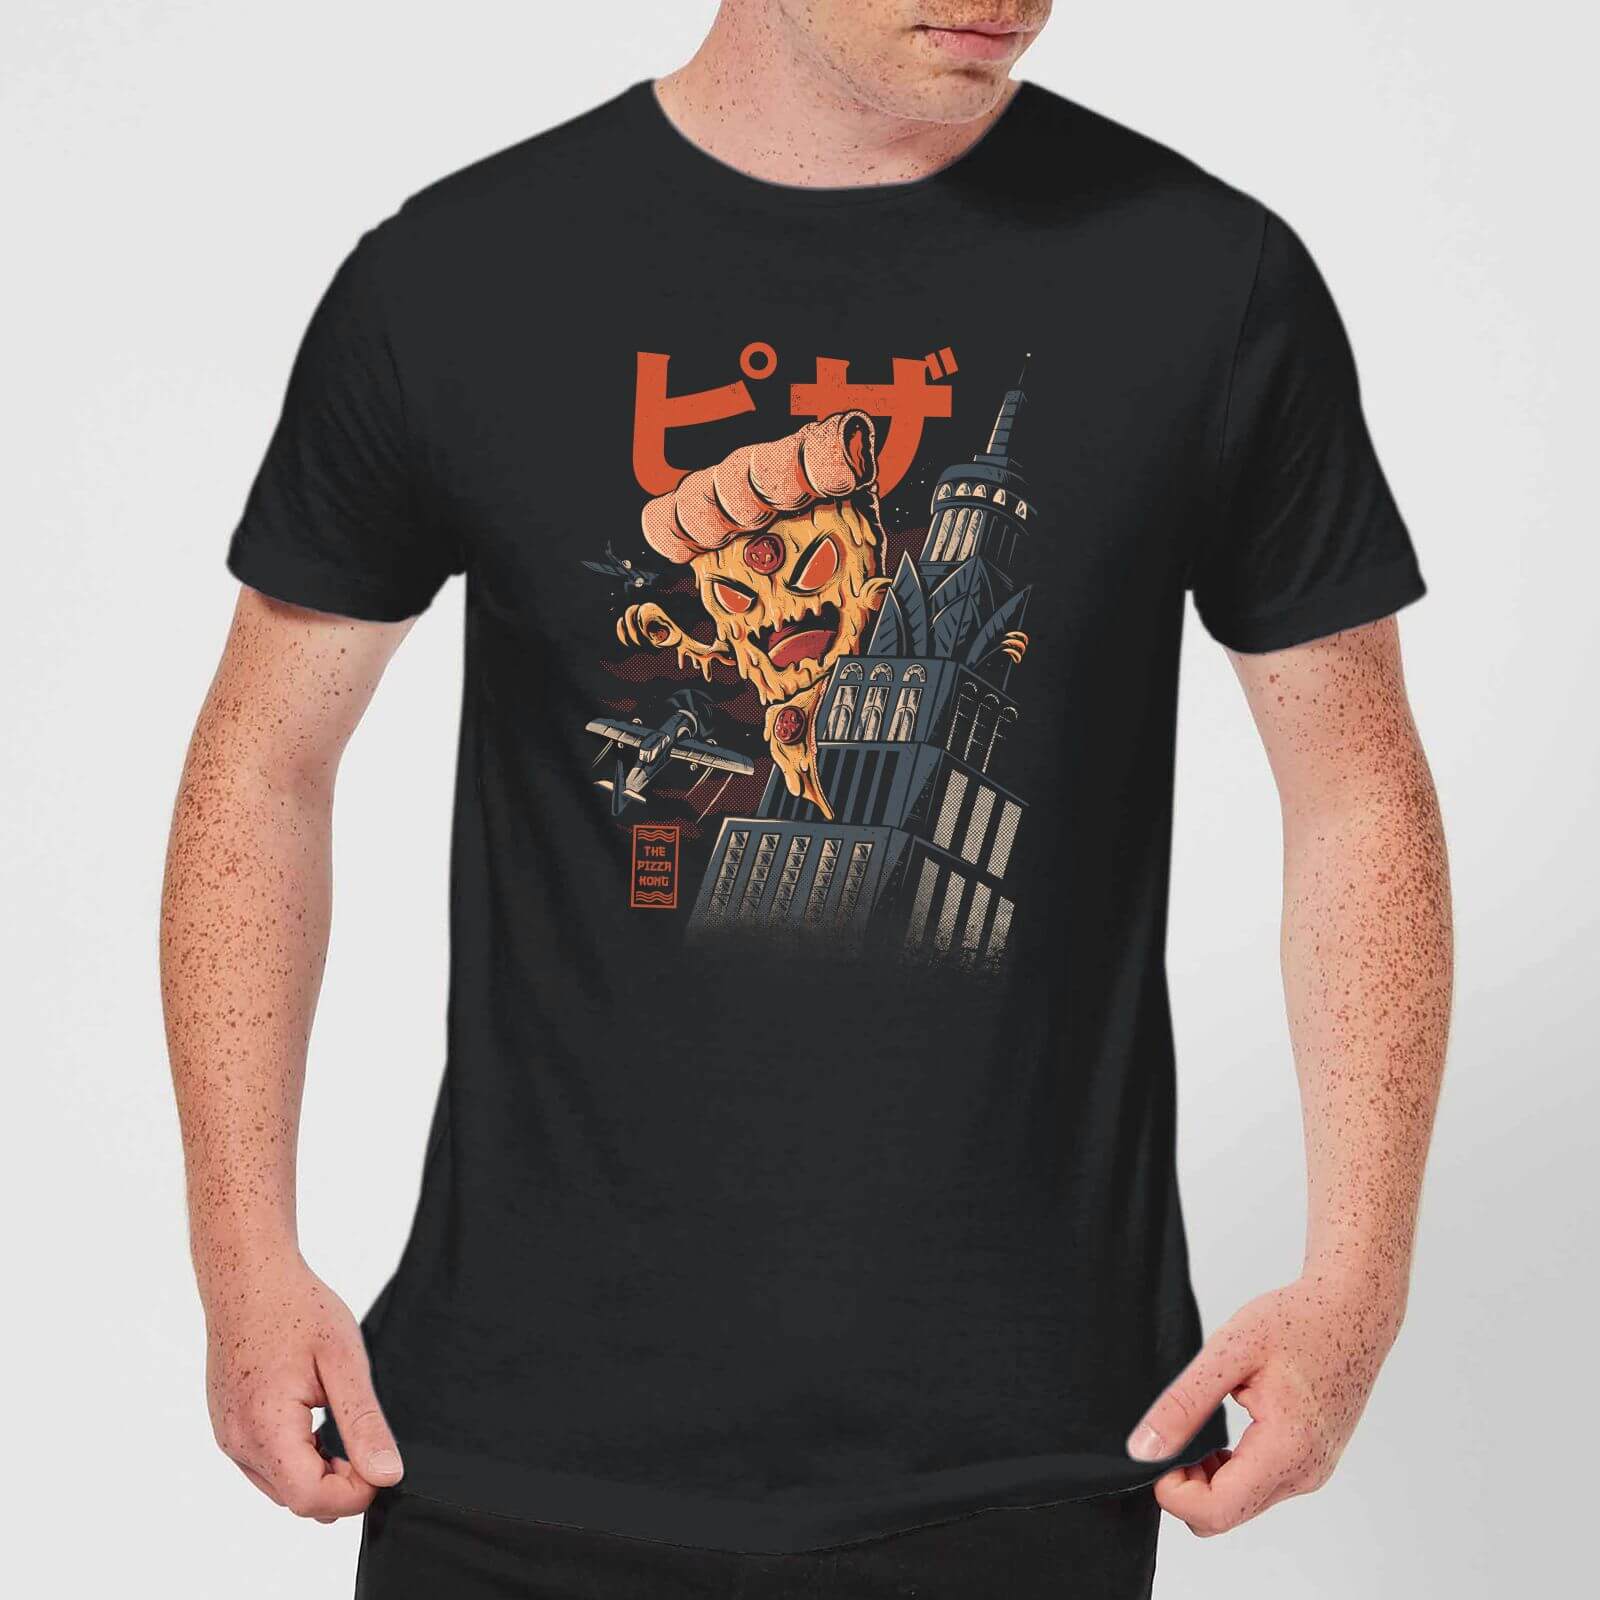 Ilustrata Pizza Kong Men's T-Shirt - Black - XS - Black